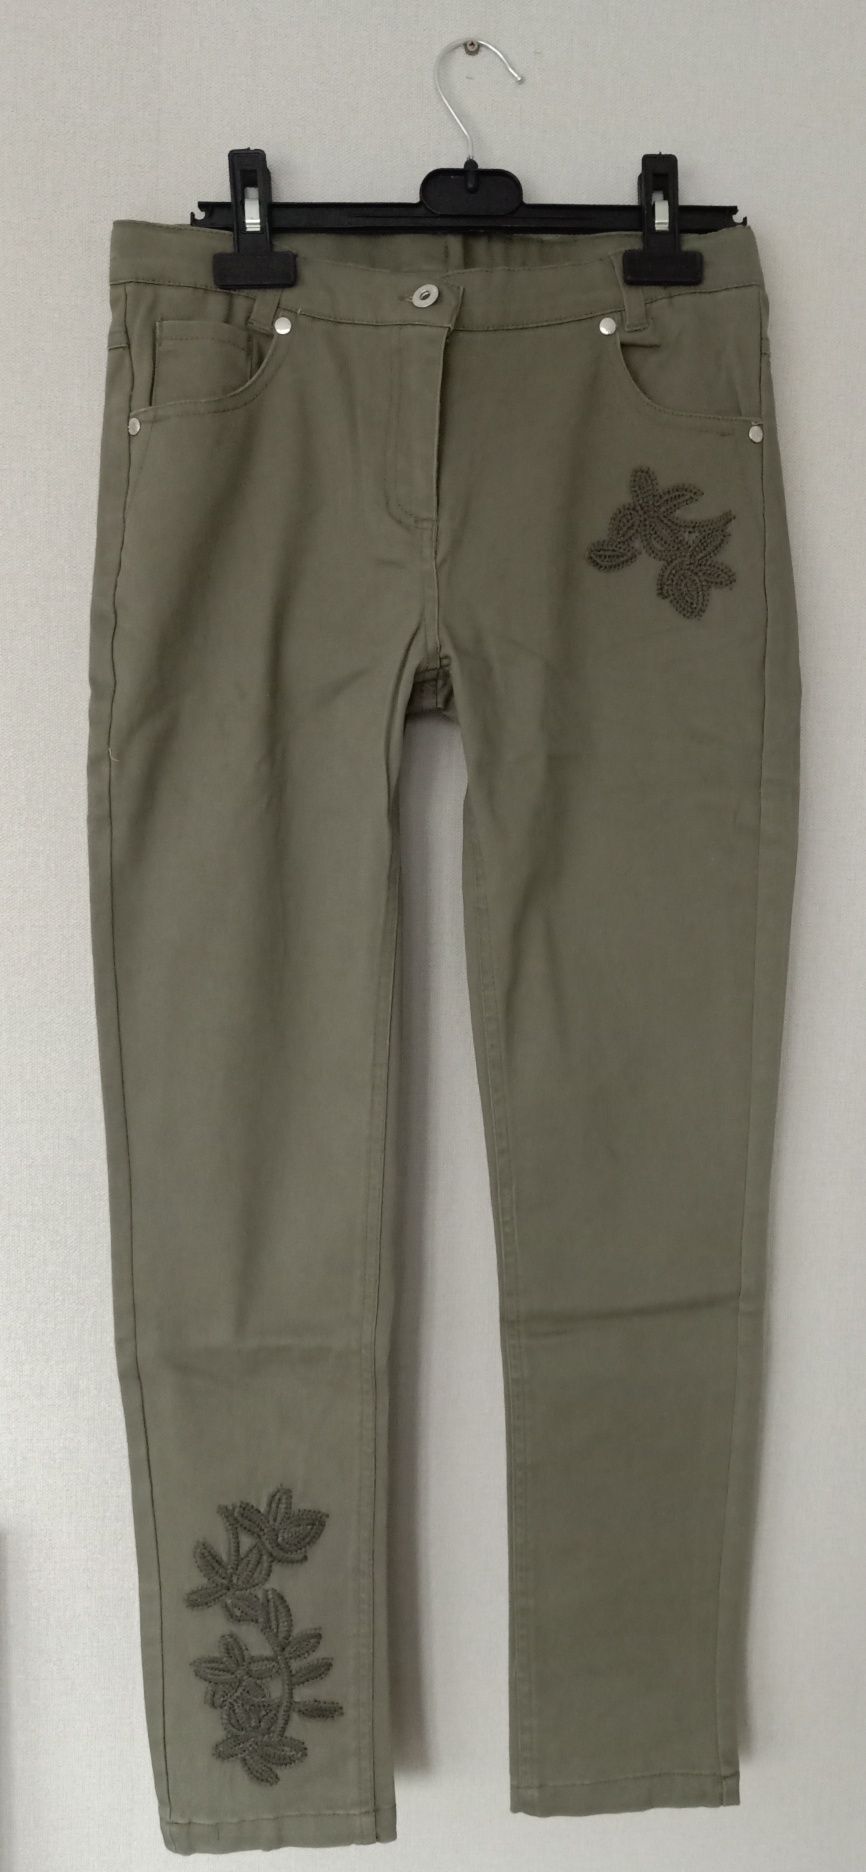 Spodnie jeansowe jeany khaki coccodrillo 152 haftowane wyszywane